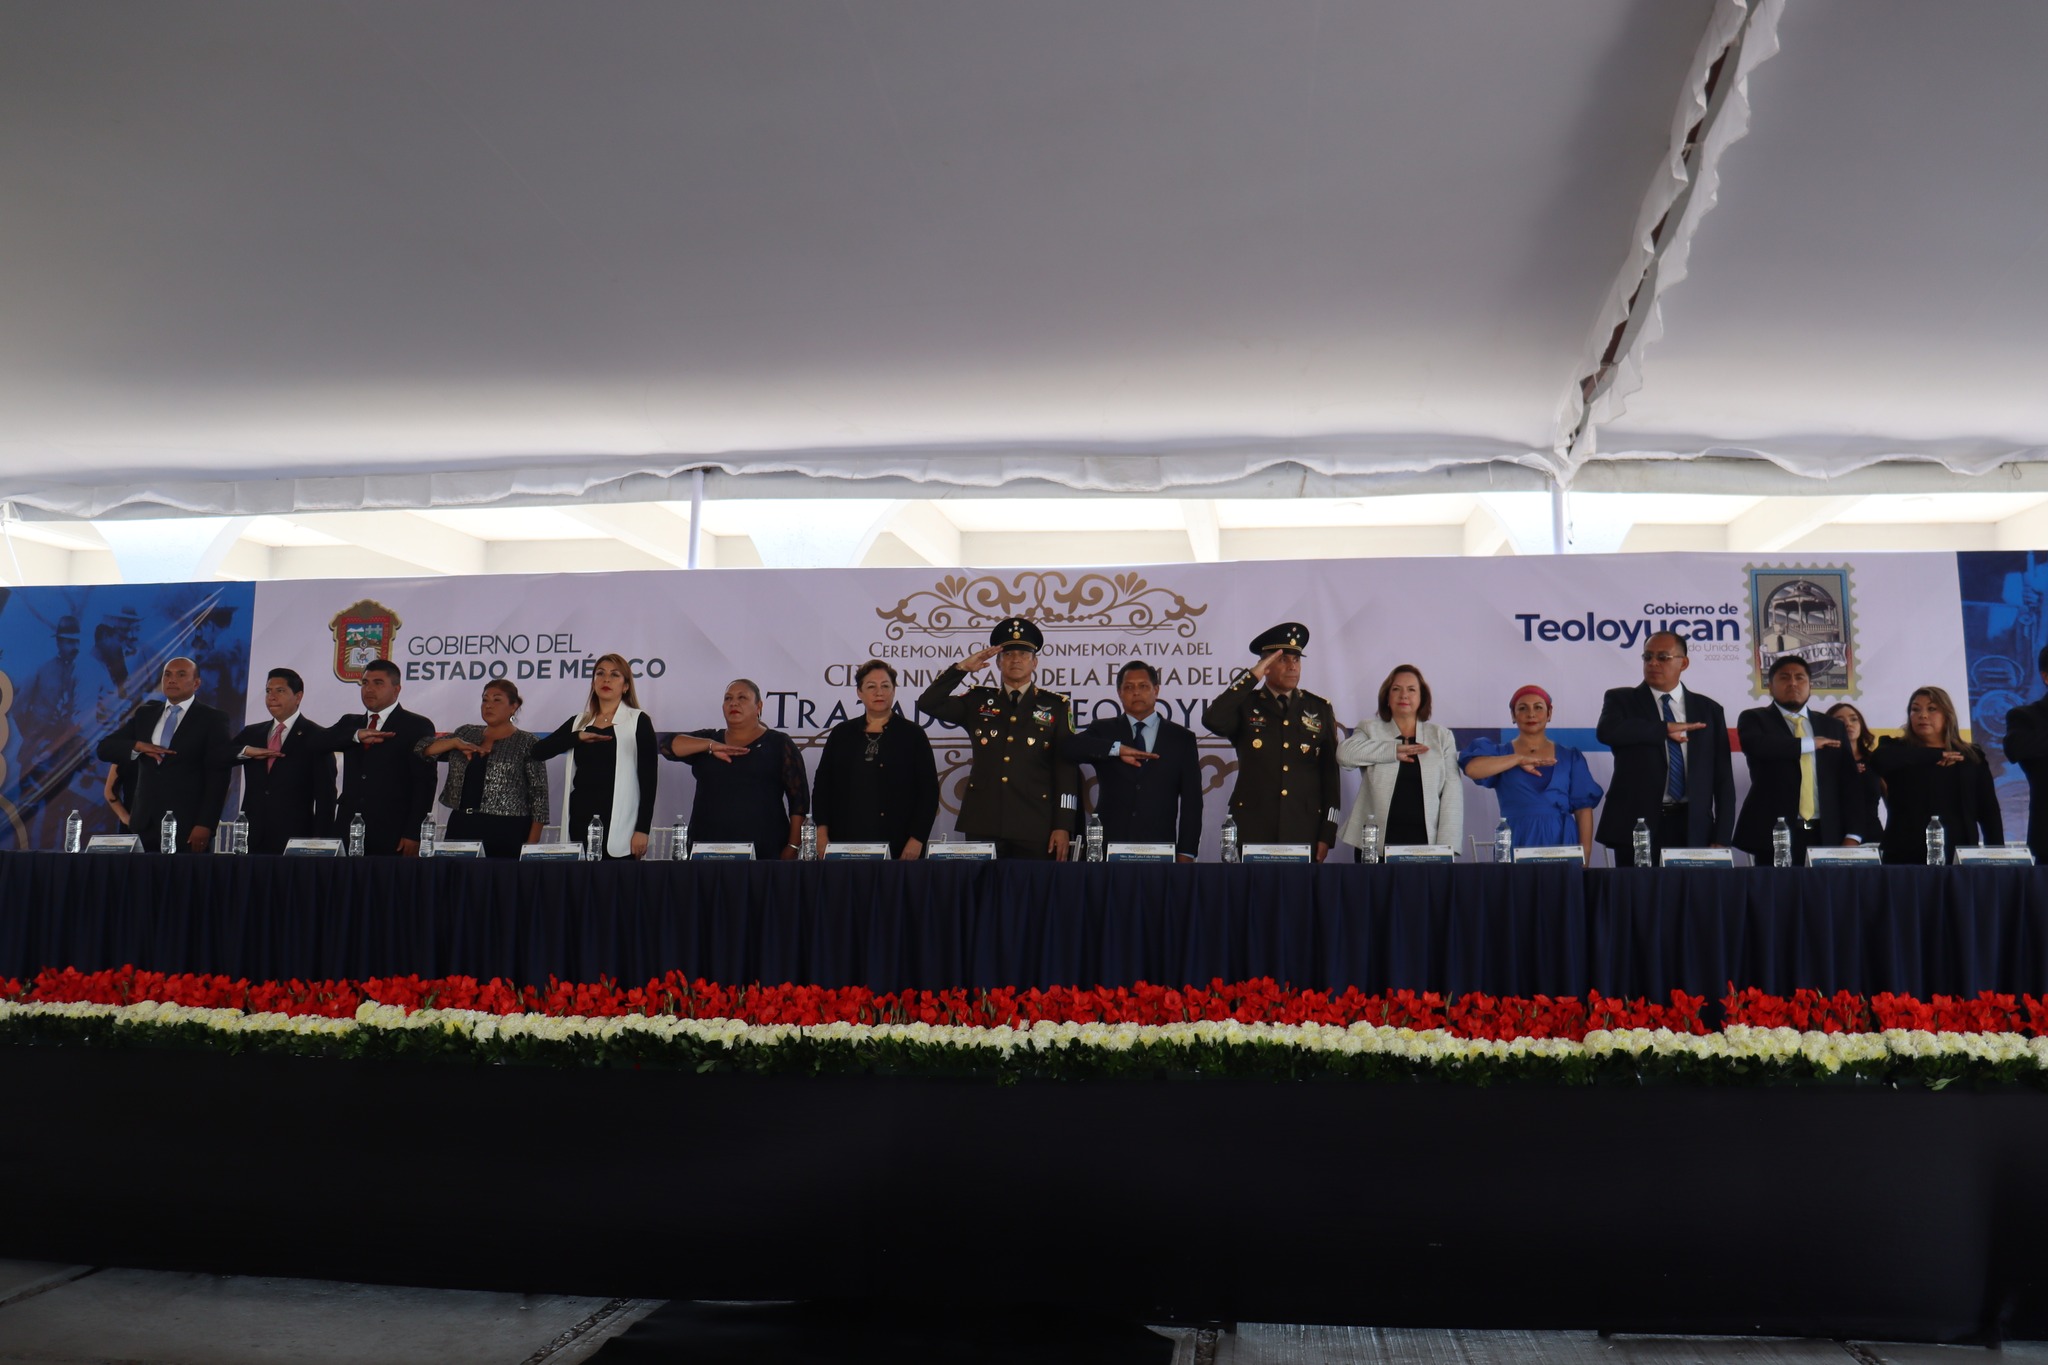 Ceremonia Civica del CIX Aniversario de la Firma de los Tratados de #Teoloyucan